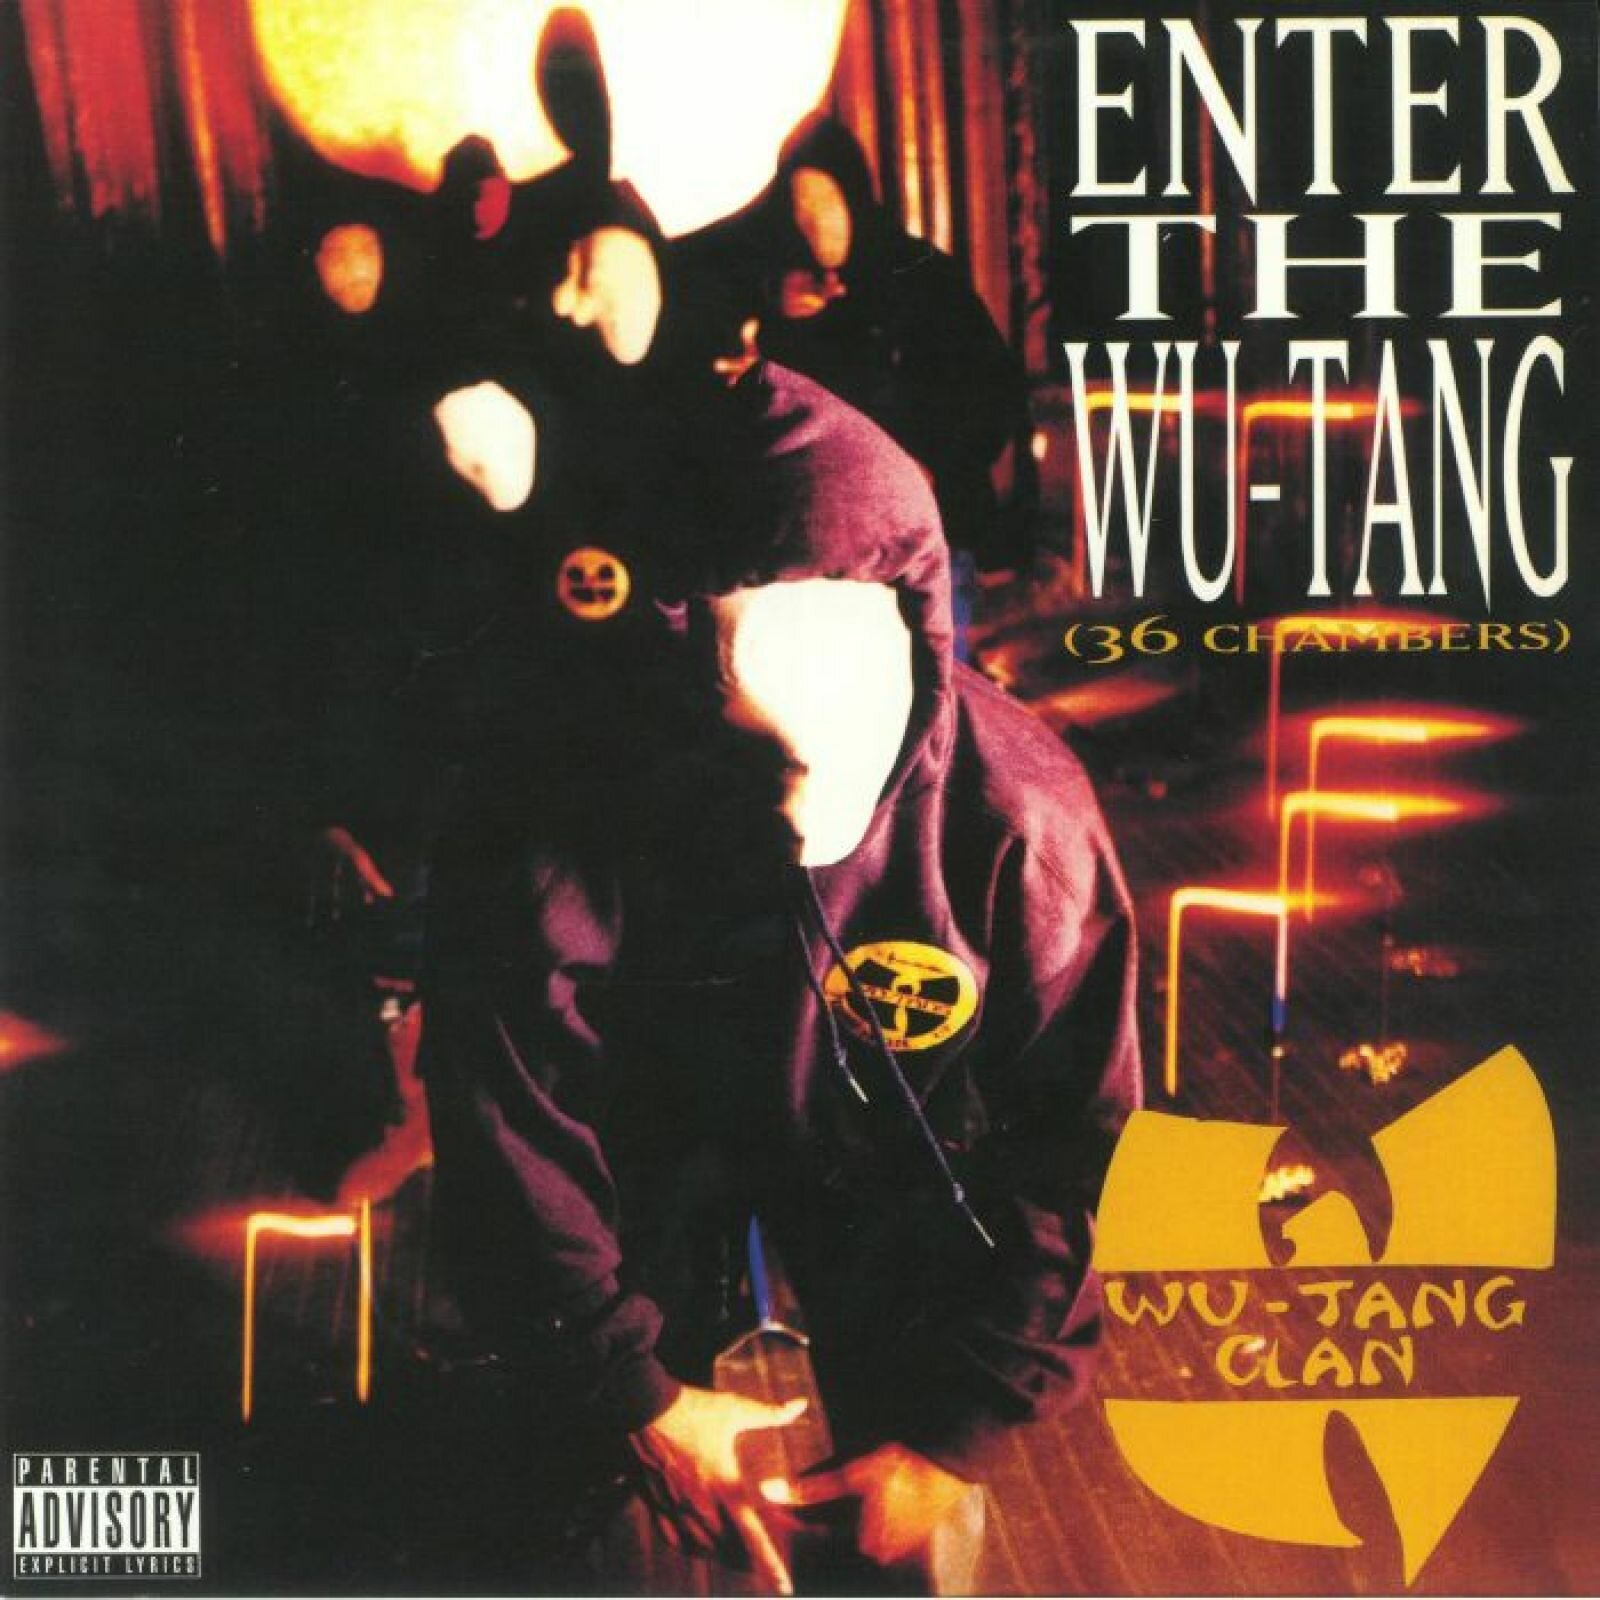 Виниловая пластинка Wu-Tang Clan "Enter The Wu-Tang Clan (36 Chambers)" LP